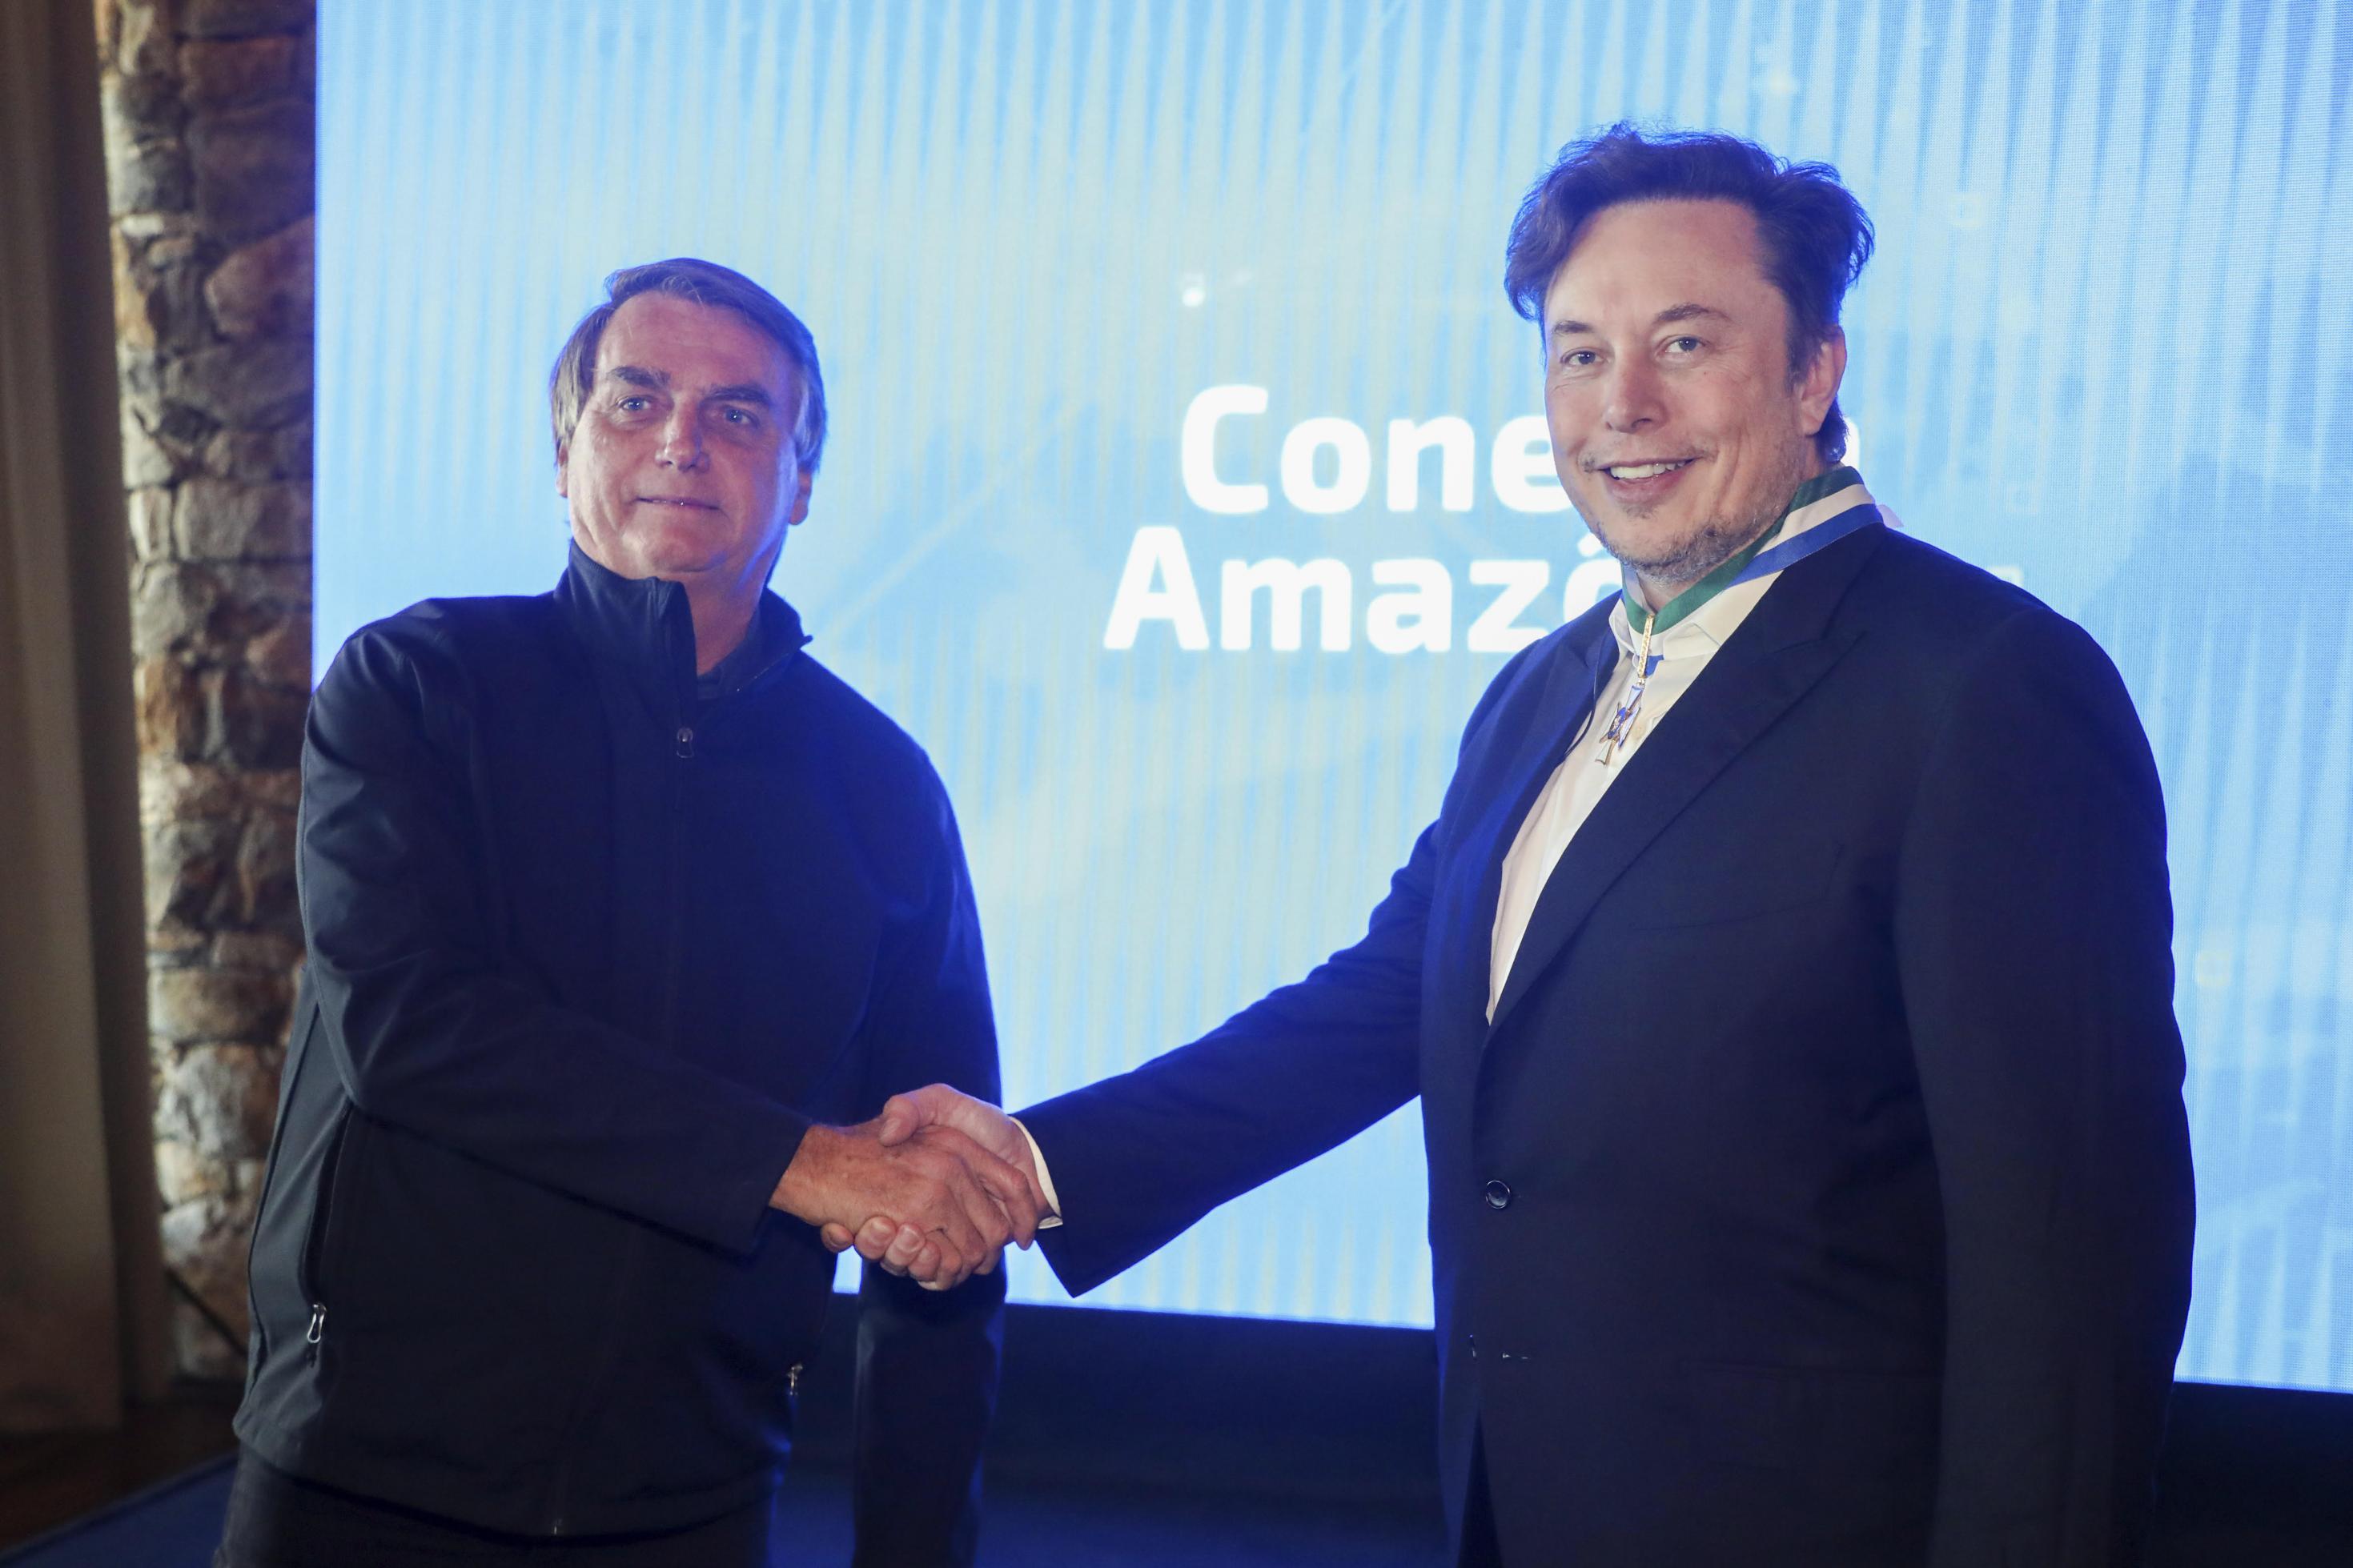 Jair Bolsonaro und Elon Musk geben sich die Hand vor einem blauen Hintergrund in einem Konferenezzentrum.